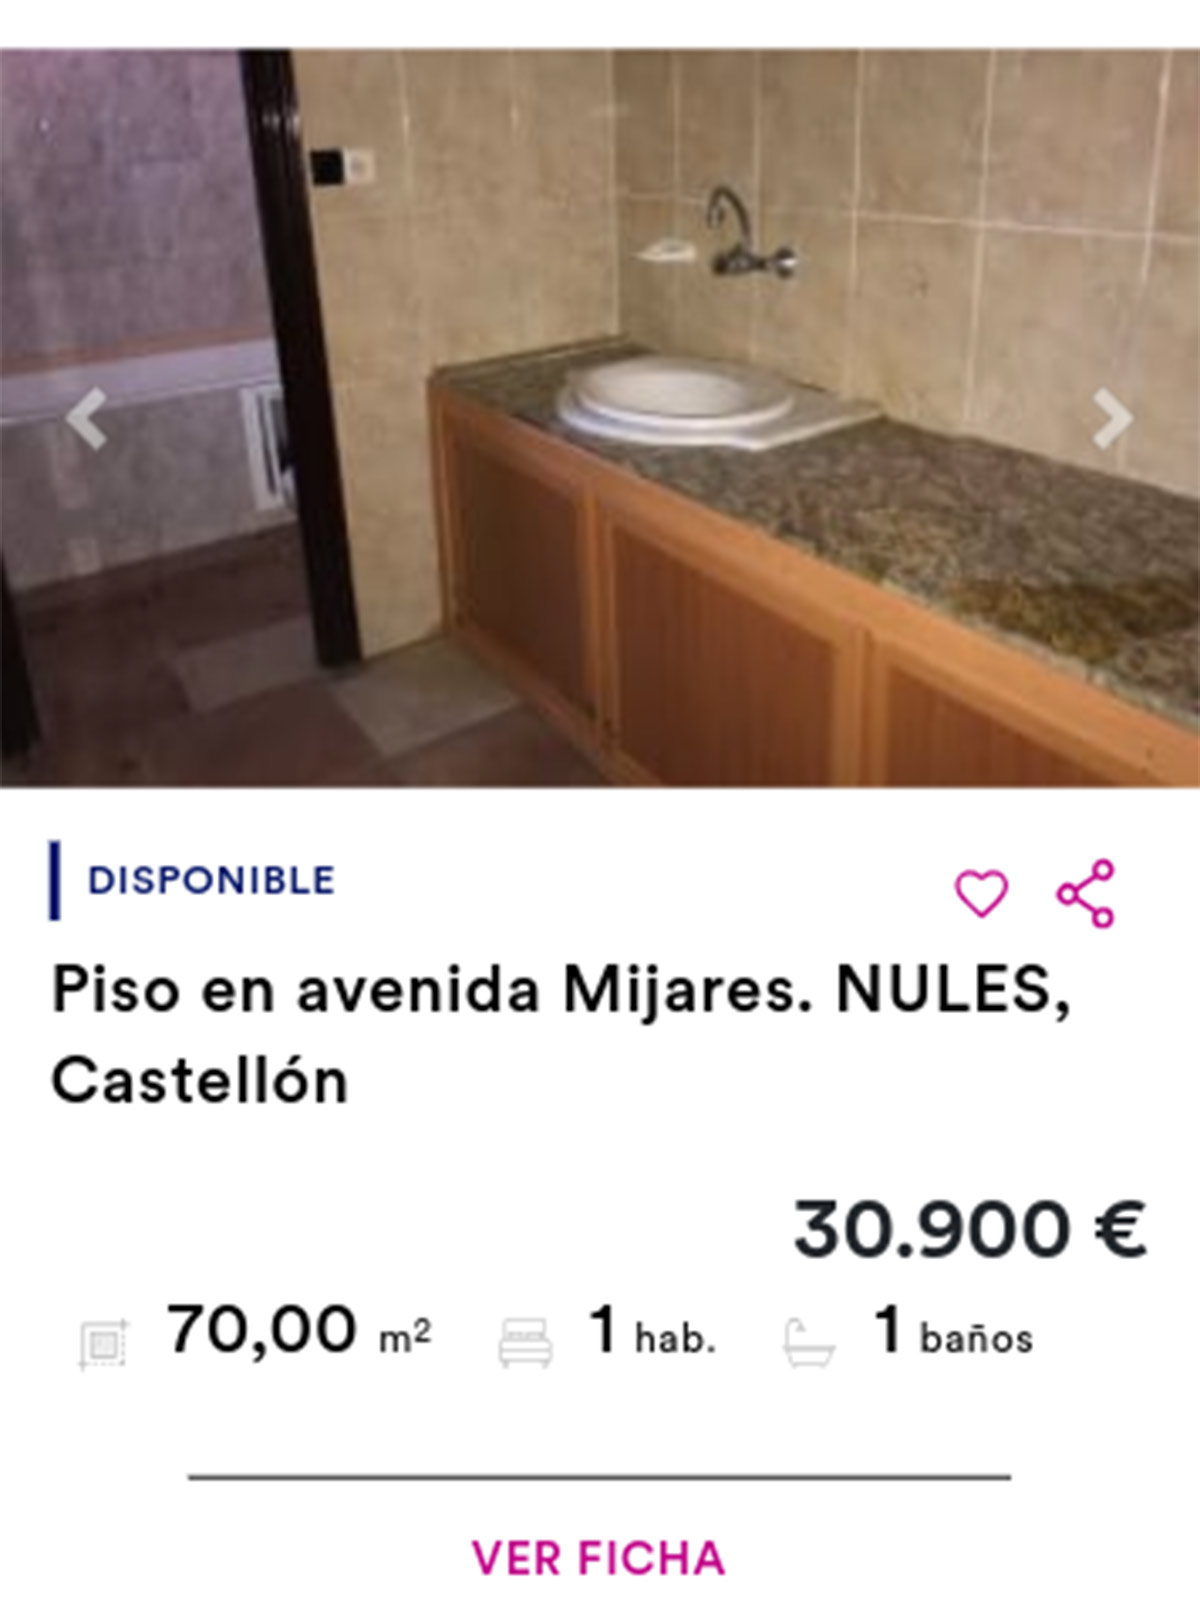 Piso de Cajamar por 30.900 euros